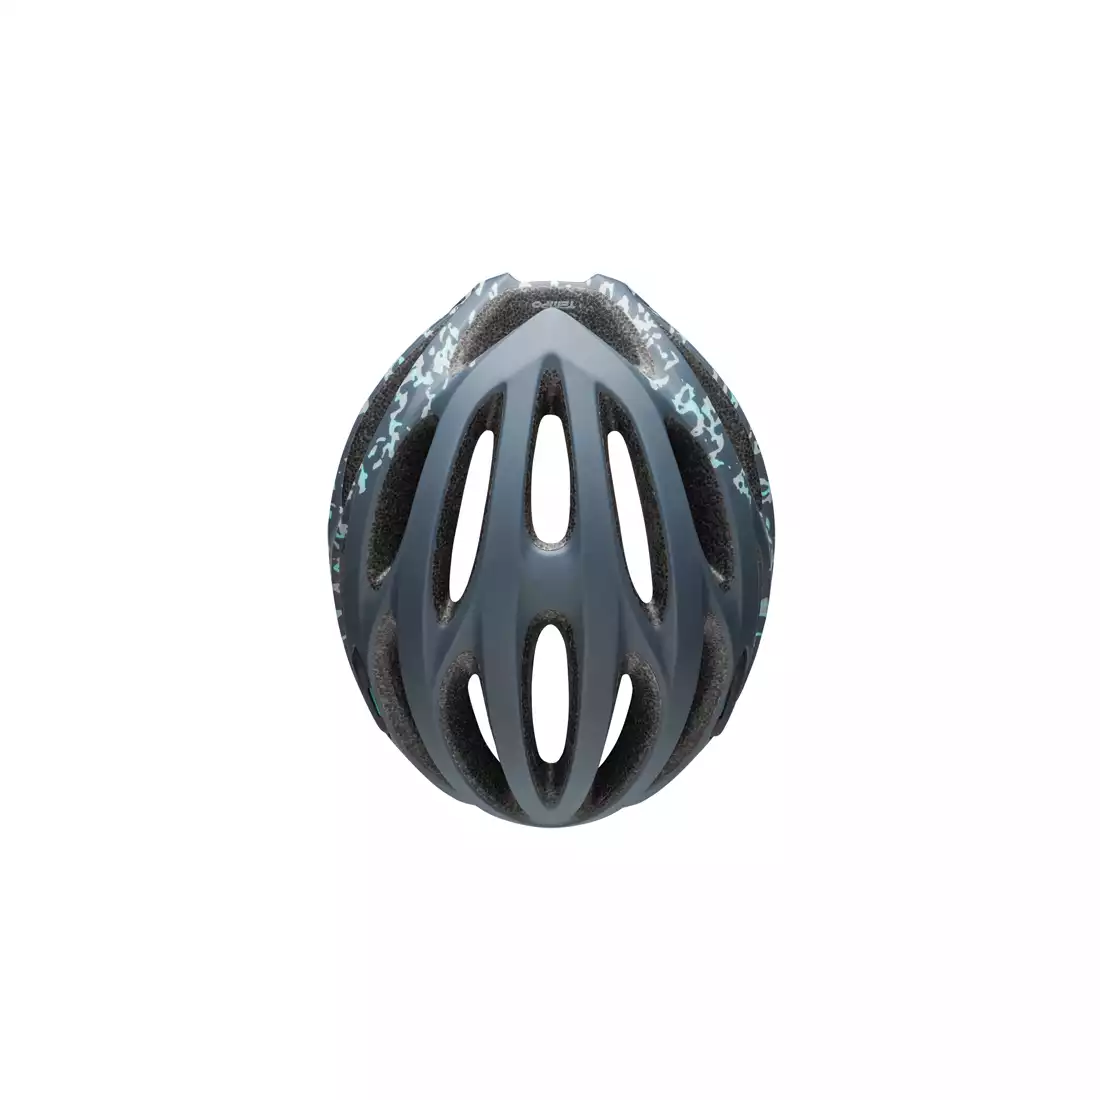 BELL TEMPO JOY RIDE - BEL-7088767 damski kask rowerowy matte lead stone